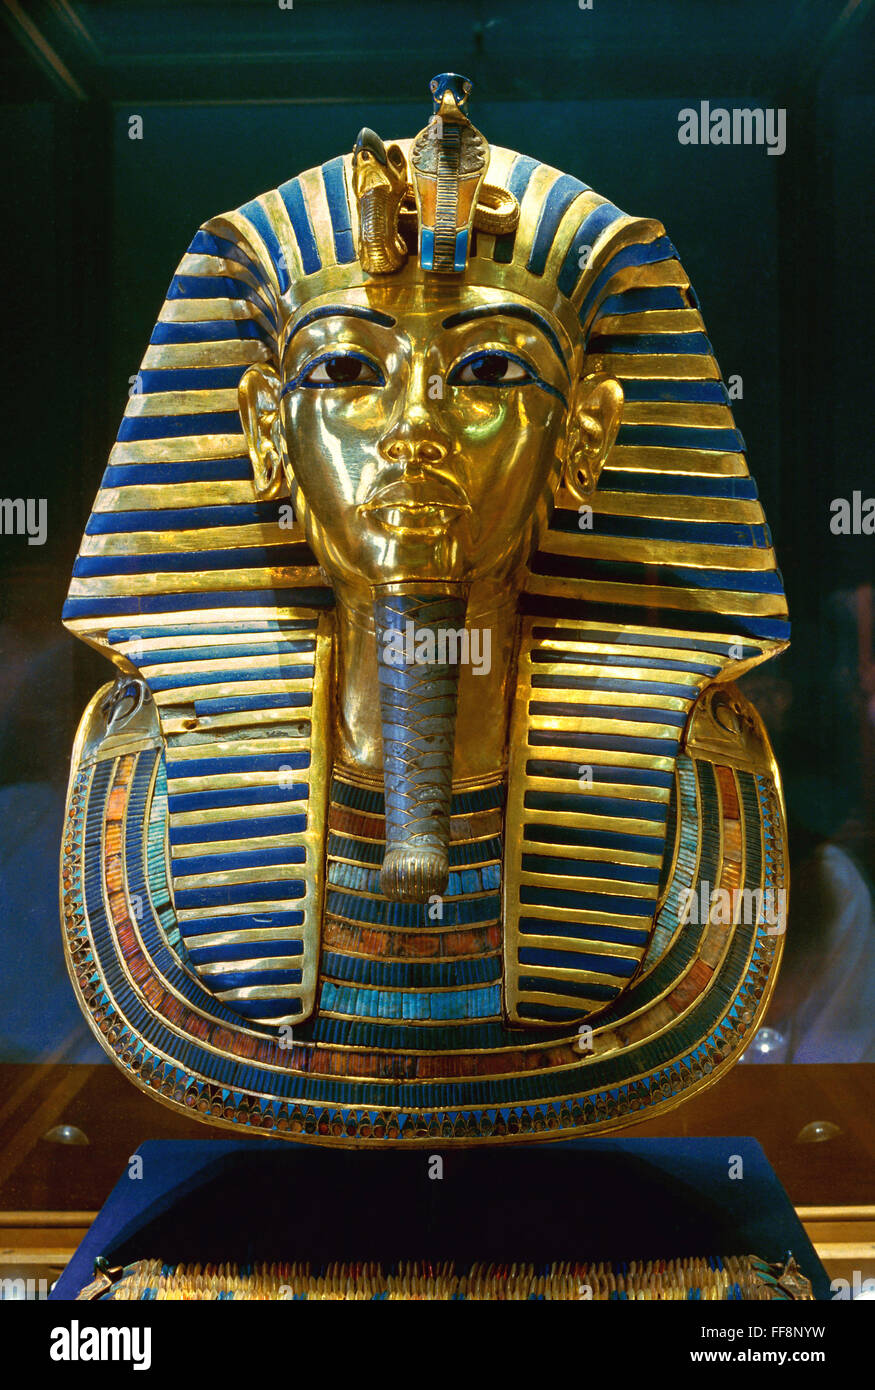 Le masque funéraire de Toutankhamon, 14ème siècle avant J.-C., Musée égyptien des antiquités, Le Caire, Egypte, Afrique du Sud Banque D'Images